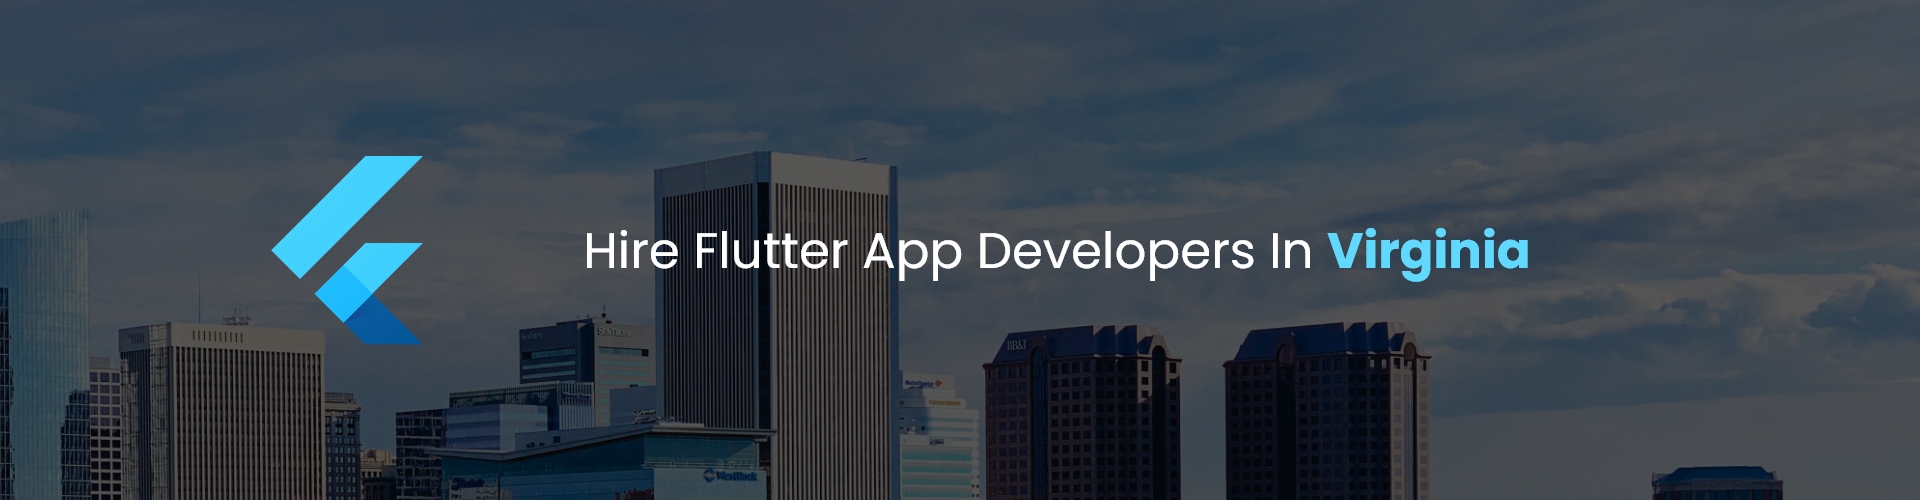 hire flutter app developers in virginia